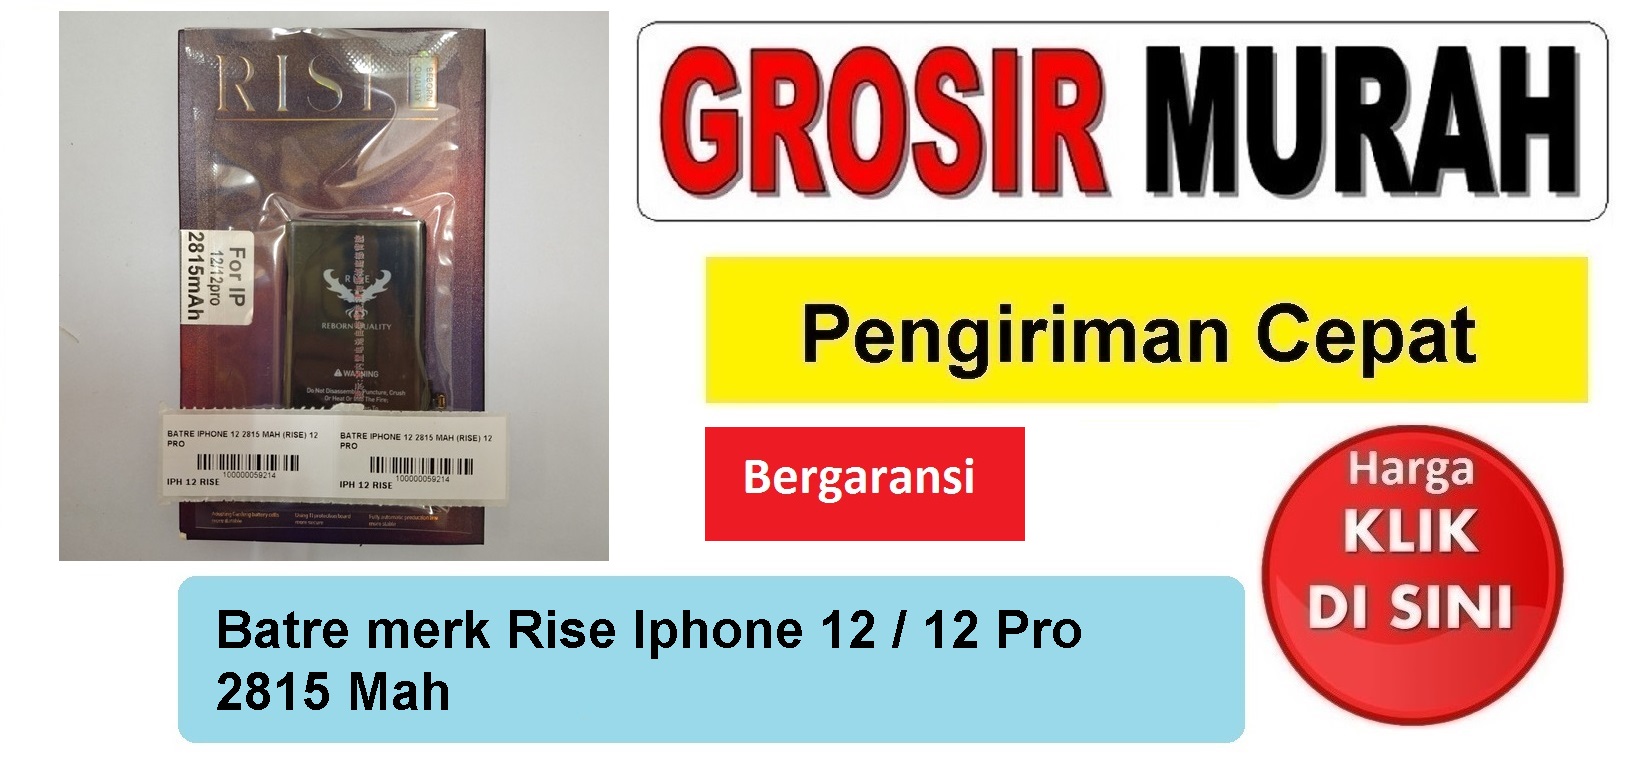 Batre merk Rise Iphone 12 2815 Mah iPhone 12 Pro Baterai Battery Bergaransi Batere